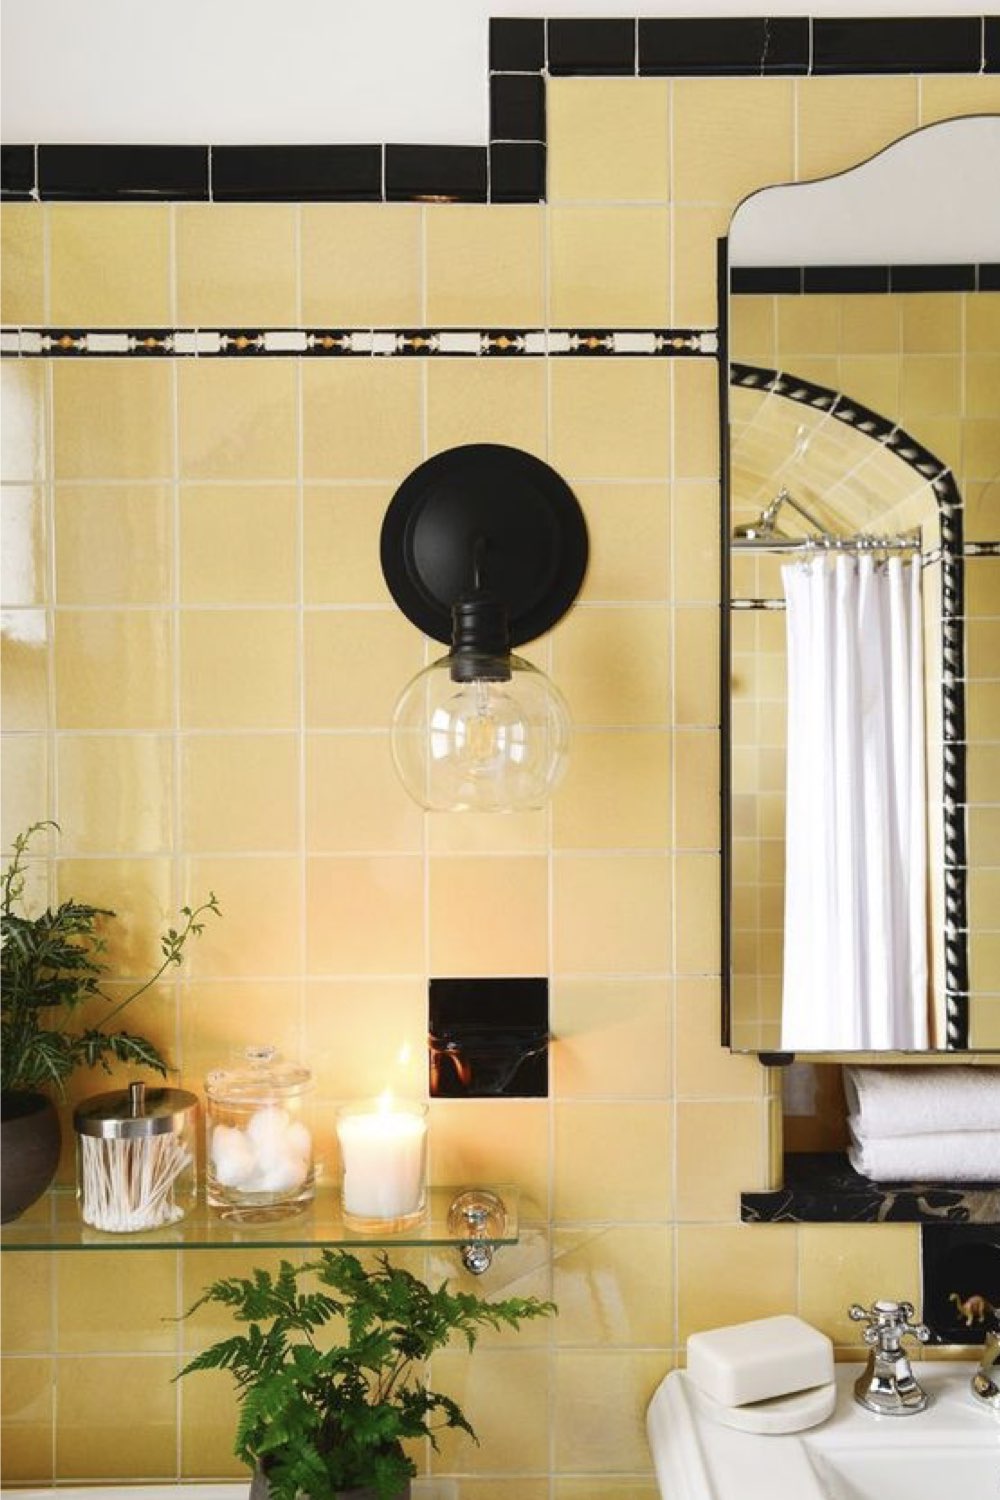 salle de bain decoration reussie exemple carrelage mural crédence soubassement jaune pastel contrasté avec détails noir frise luminaire et encadrement miroir